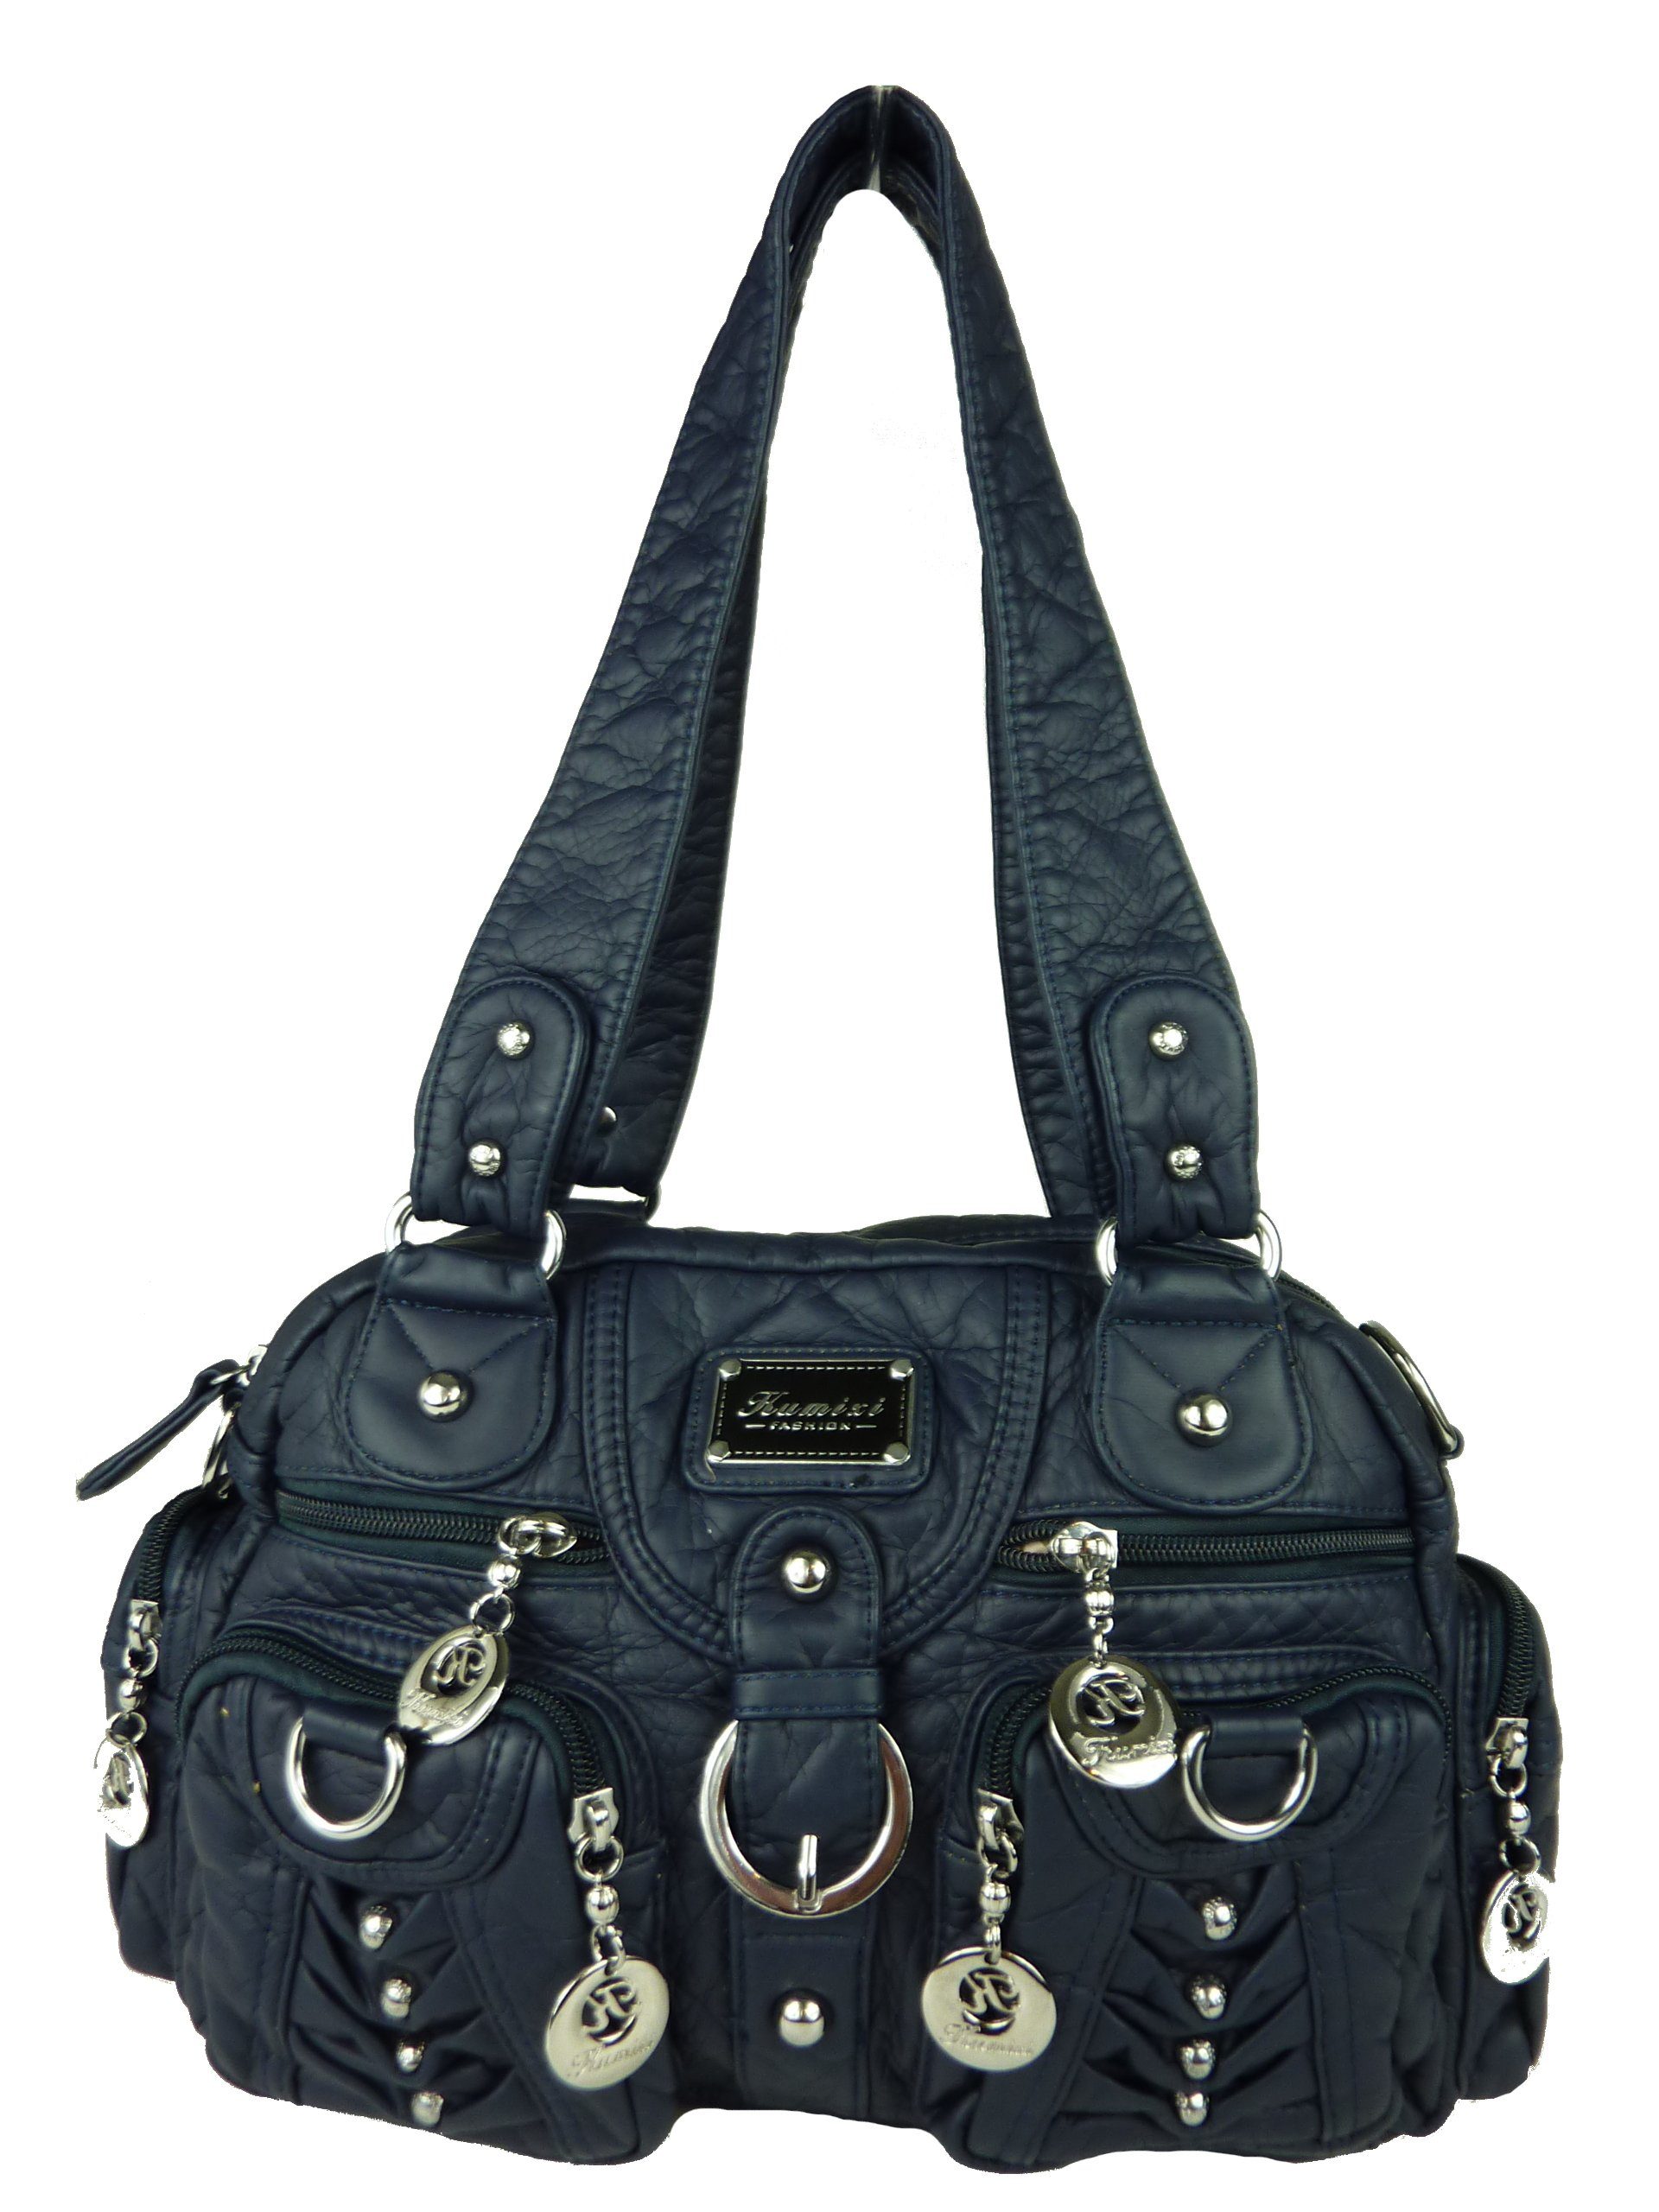 Taschen4life Schultertasche klassische Damen Handtasche (Schultertasche)  mit Nieten AKW22032, viele Fächer, verstellbarer abnehmbarer Schulterriemen